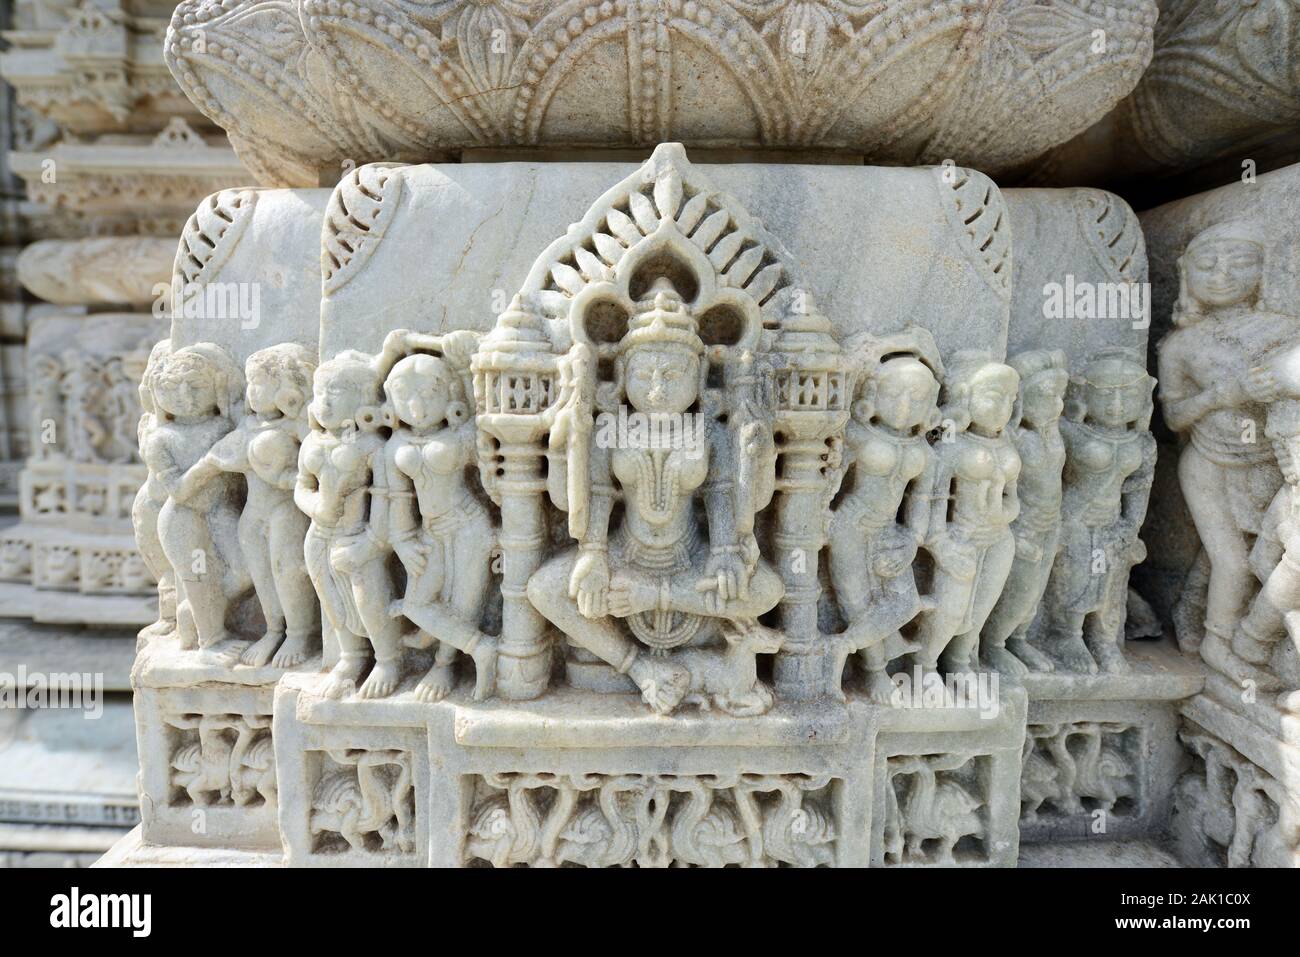 Le temple du soleil de Jain à Ranakpur, Rajasthan, Inde. Banque D'Images